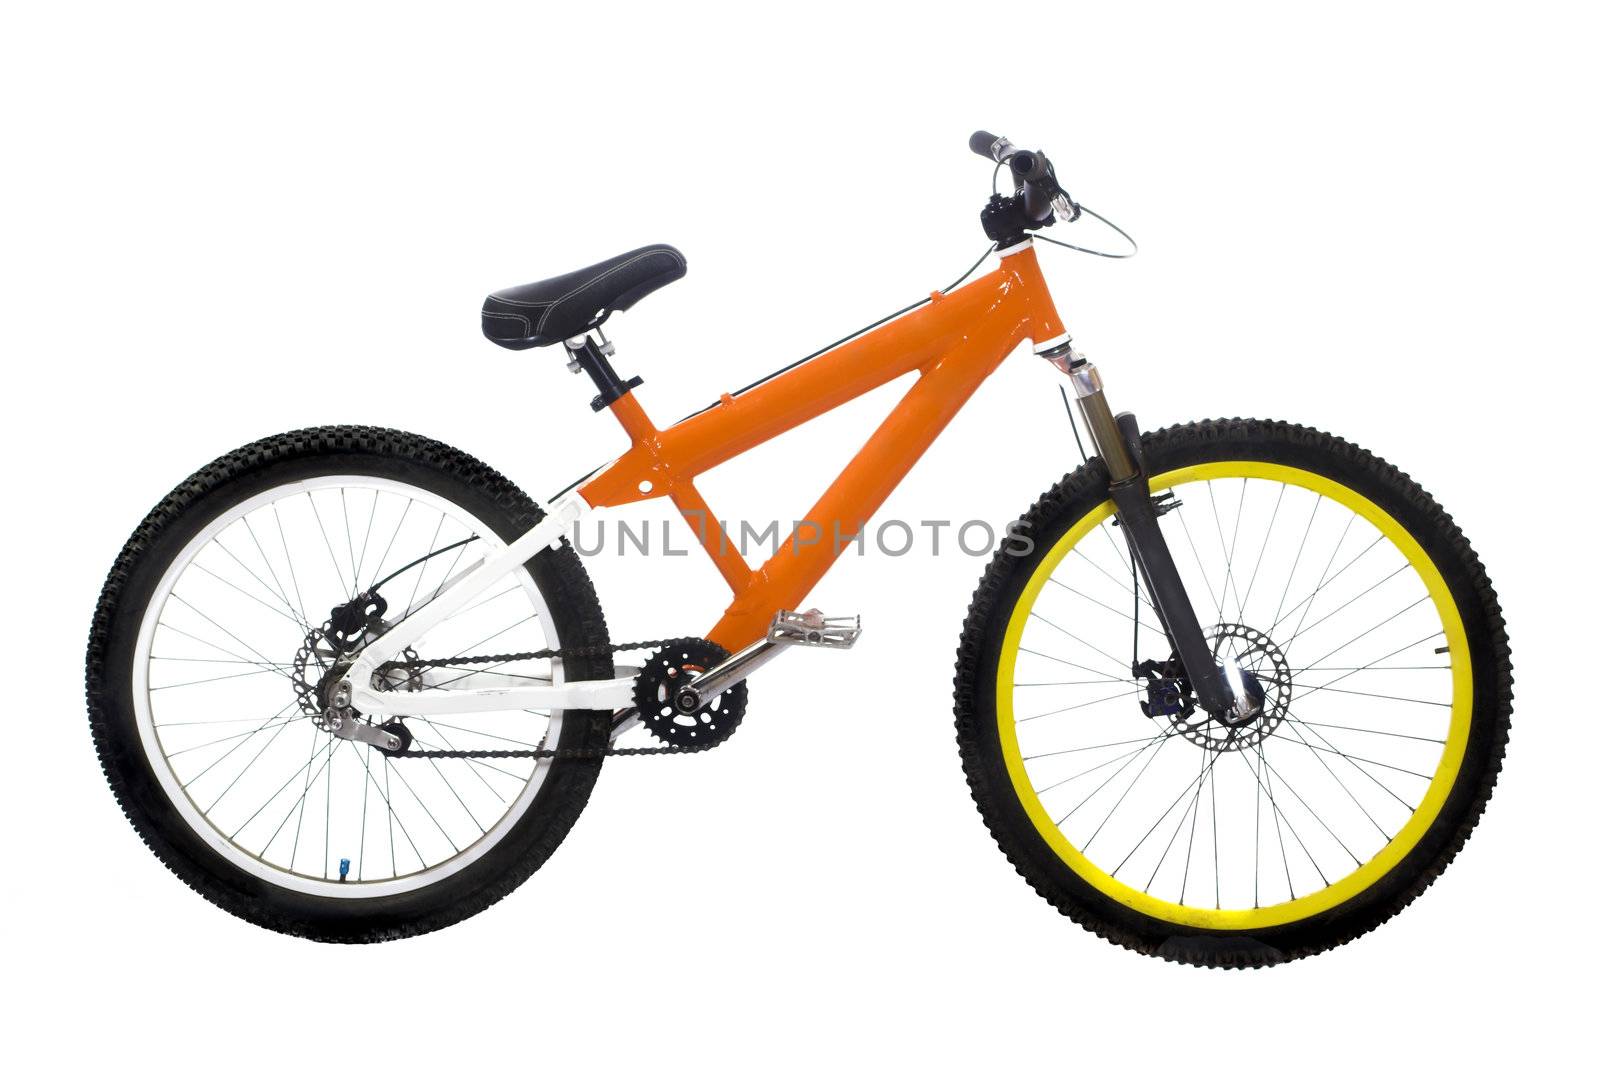 Wonderful new orange bike on white background